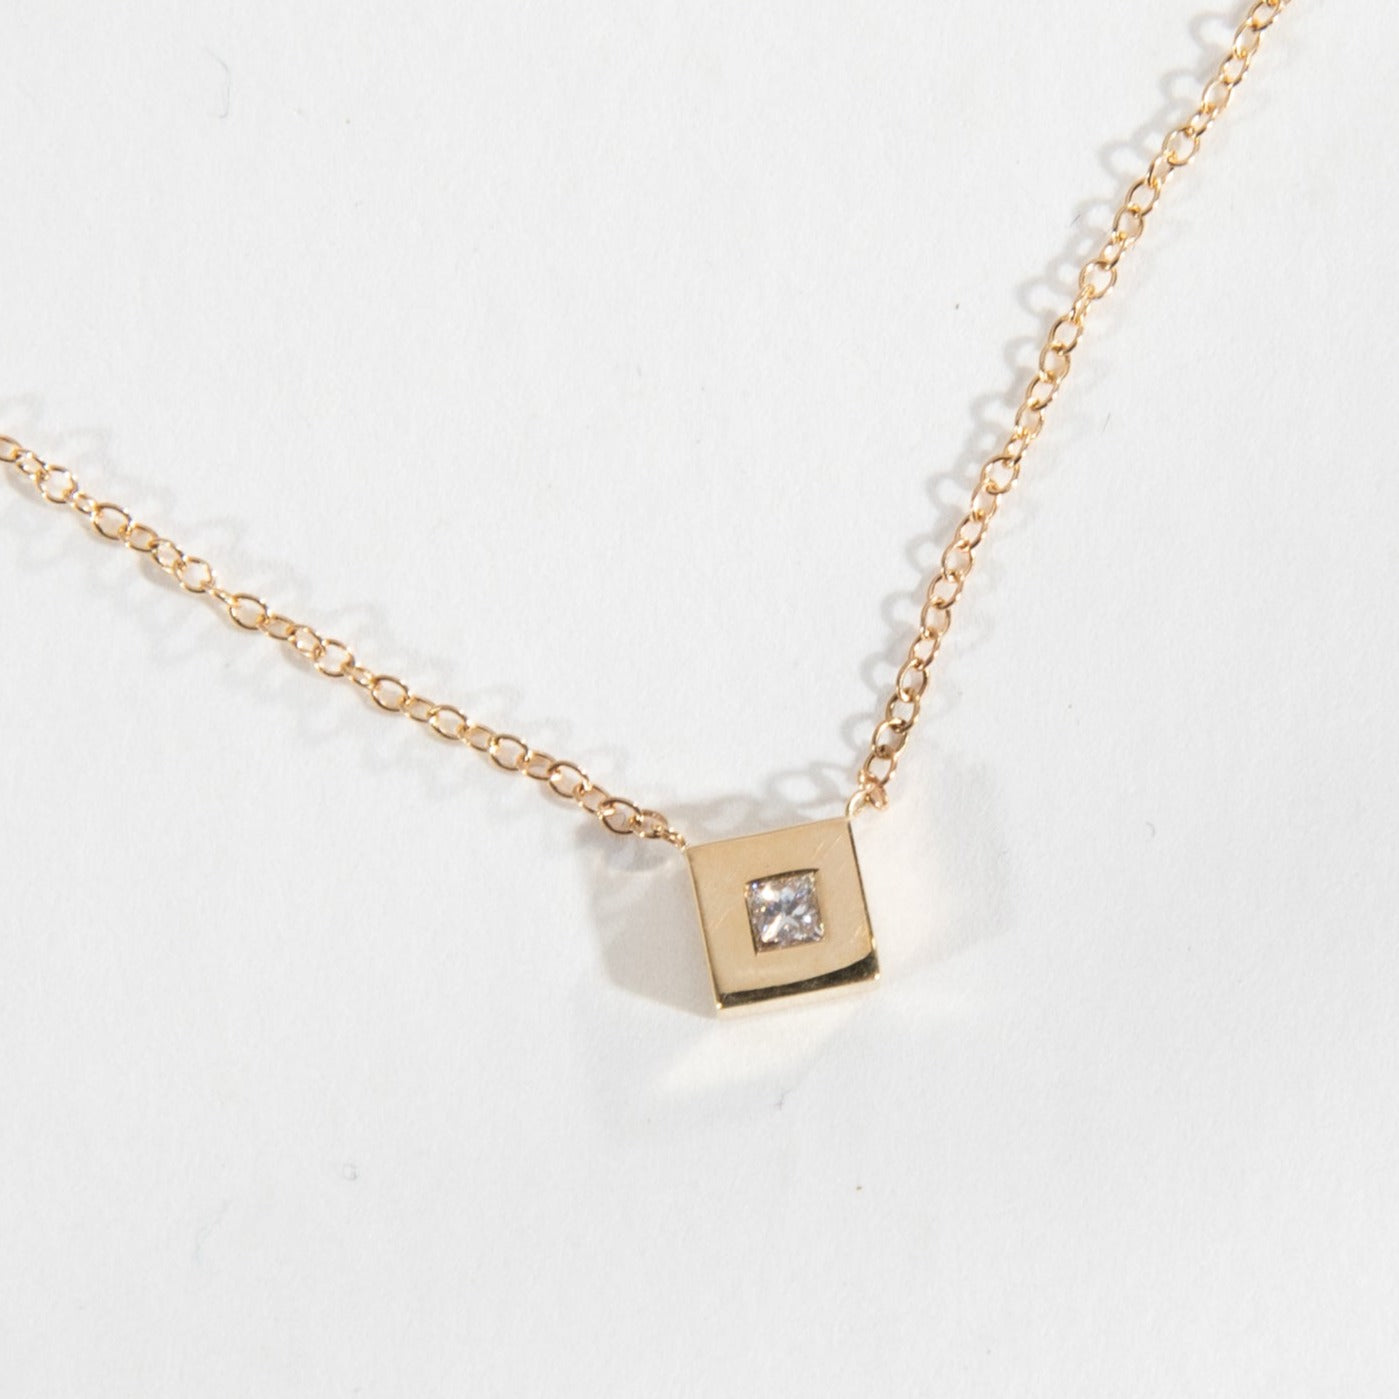 Sada Minimal Necklace in 14k Gold set with lab-grown diamonds By SHW Fine Jewelry New York City